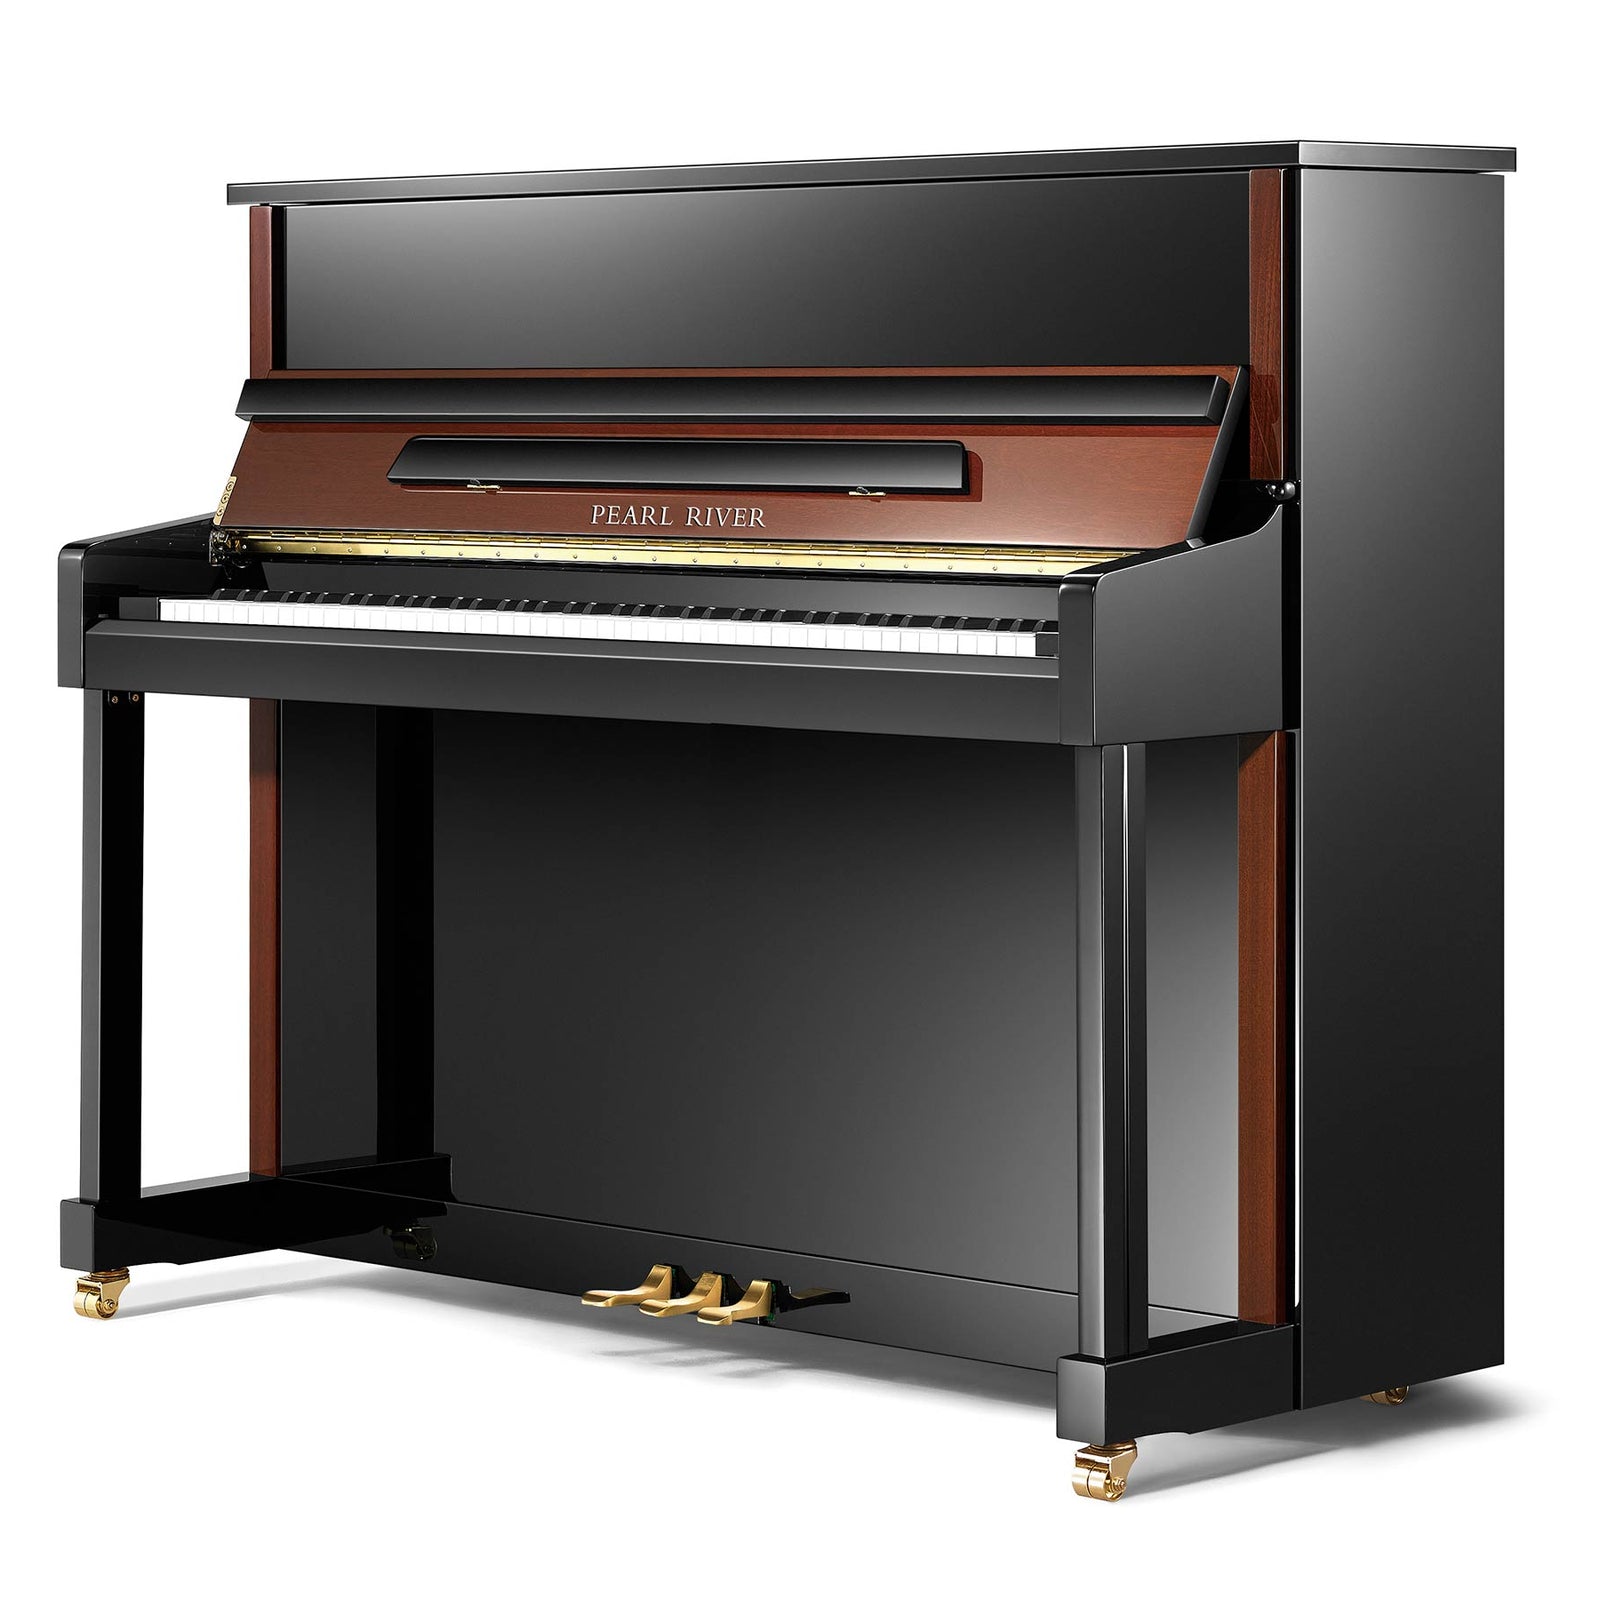 Pearl River Upright Piano PE121Z